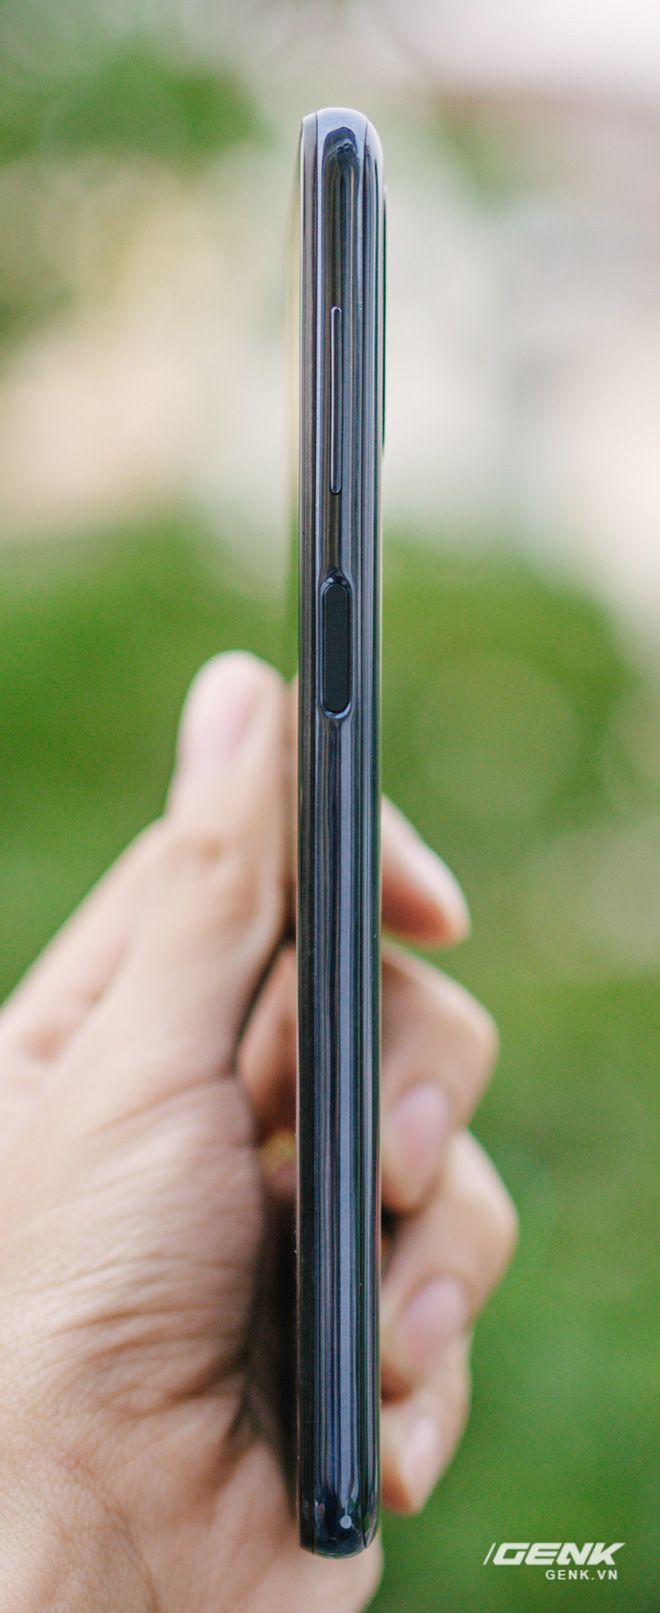 Trên tay Galaxy M51: Smartphone có pin trâu nhất phân khúc, giá 9.49 triệu đồng - Ảnh 6.